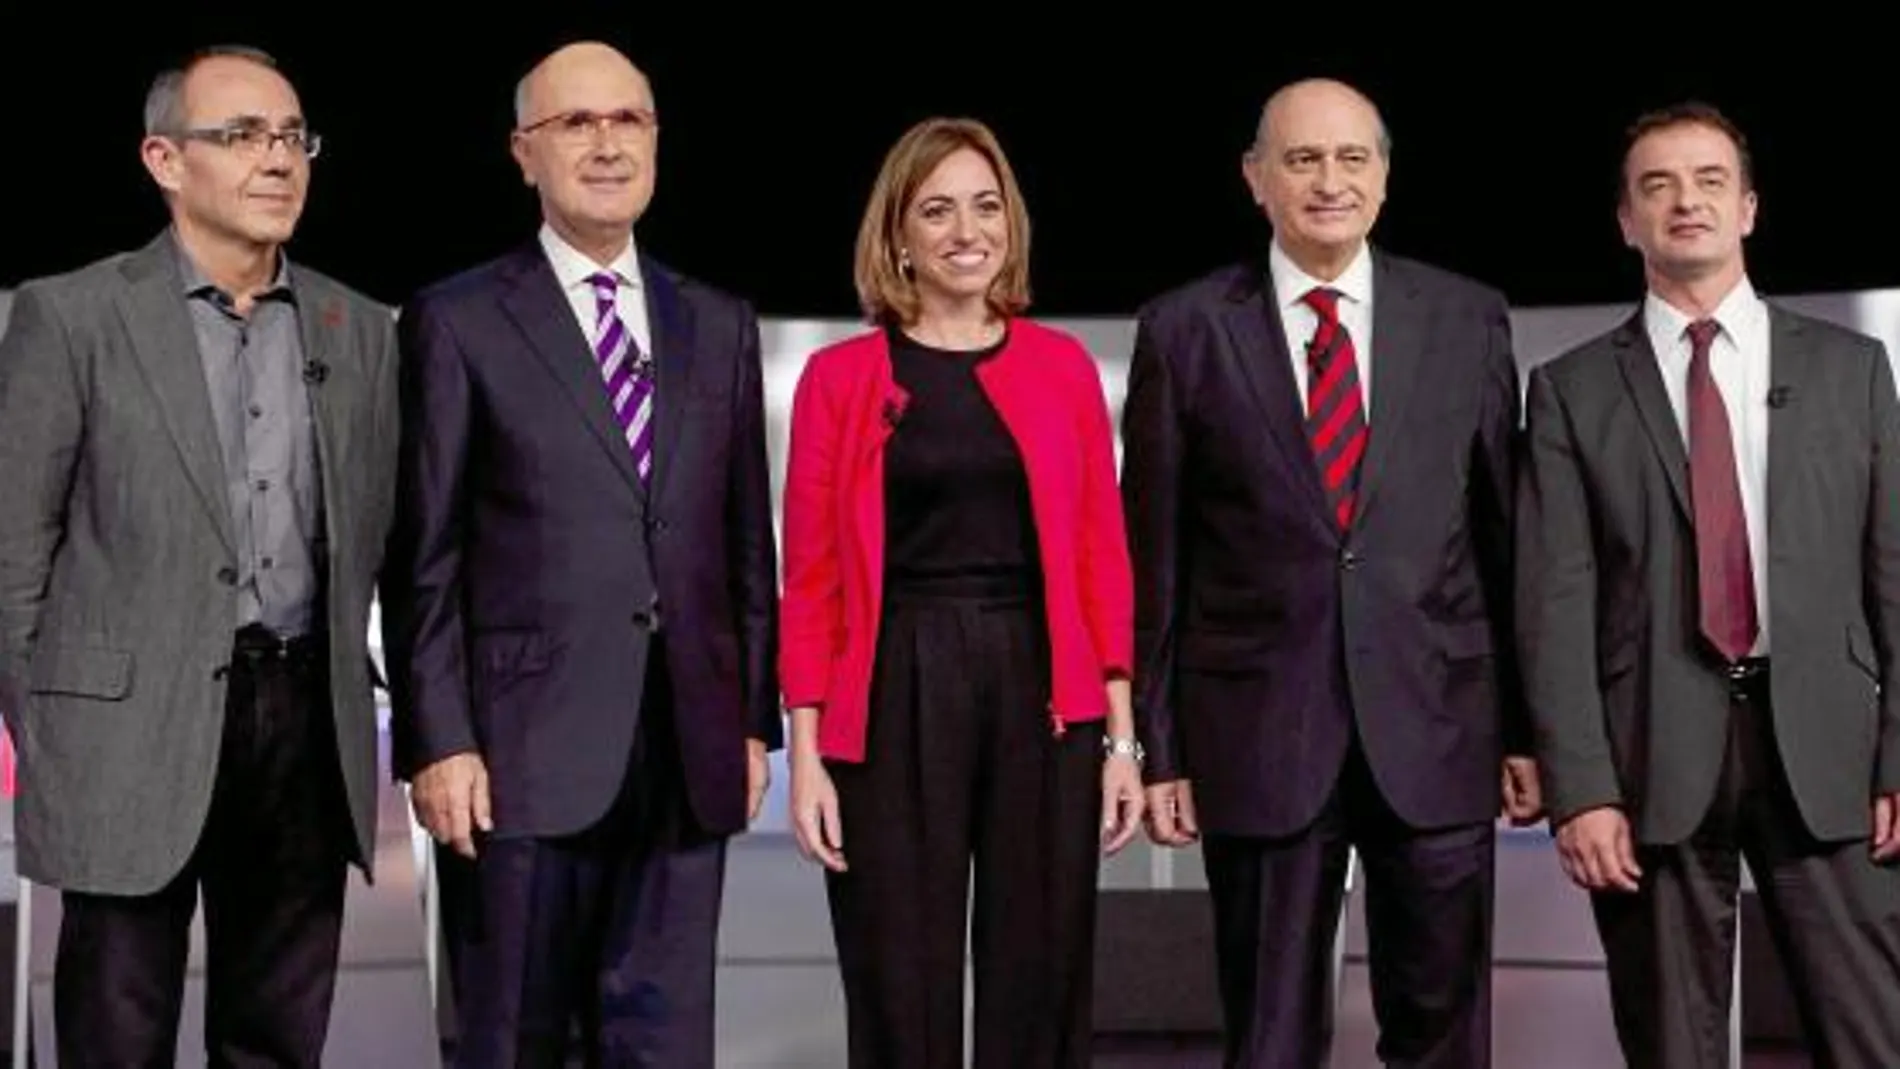 Los cinco cabezas de lista midieron por primera vez sus fuerzas en el debate a cinco de TV3 y hoy tienen el verdadero examen de la ciudadanía